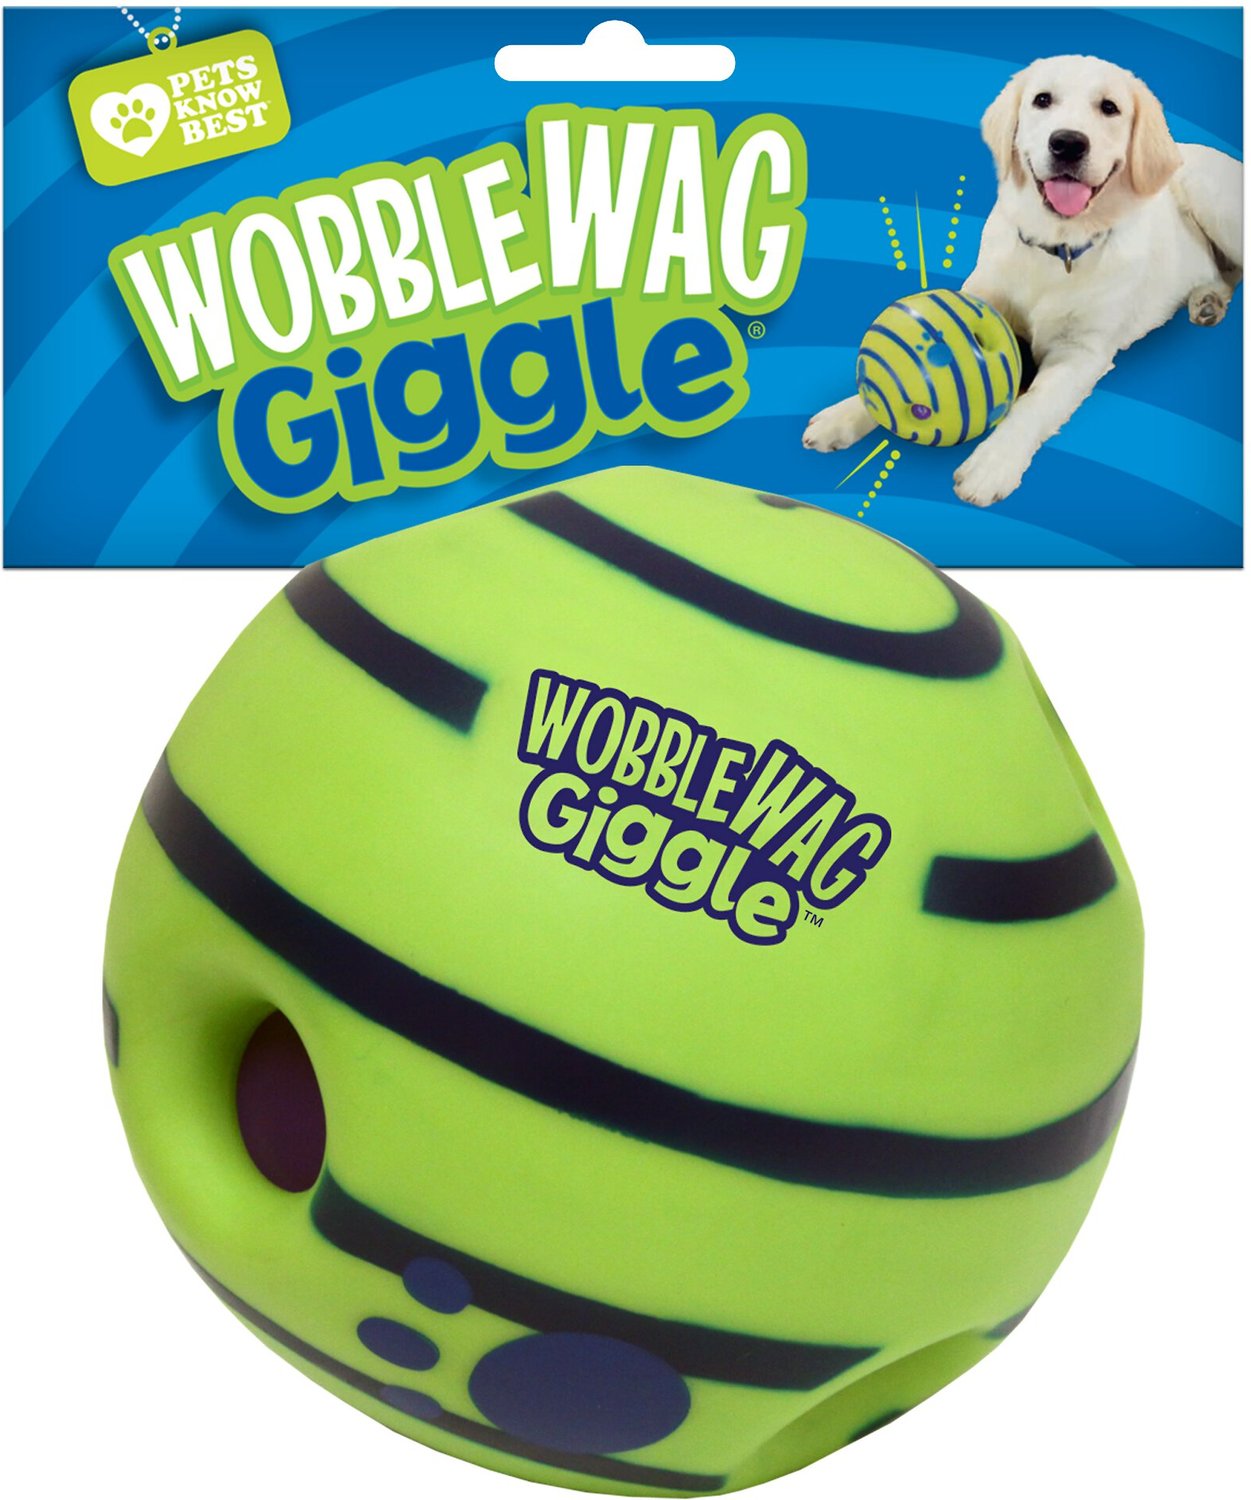 As Seen on TV Wobble Wag Giggle Dog Ball